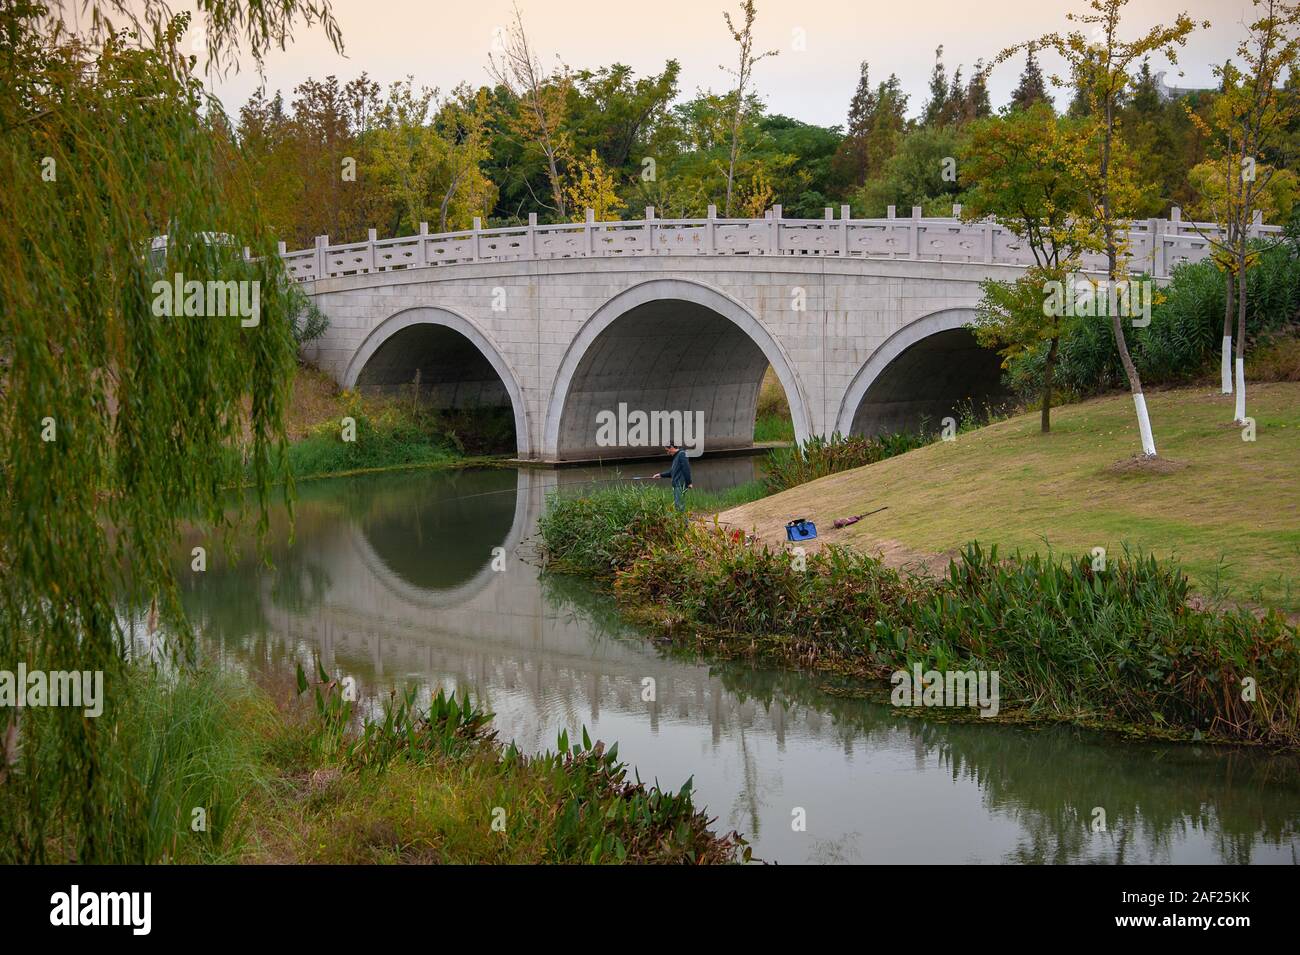 Wuxi, Chine - Octobre 2019 : Un ancien style Chinois, pont en pierre voûtée dans le Gonghuwan Wetlands Park, dans la province de Jiangsu, Chine Banque D'Images